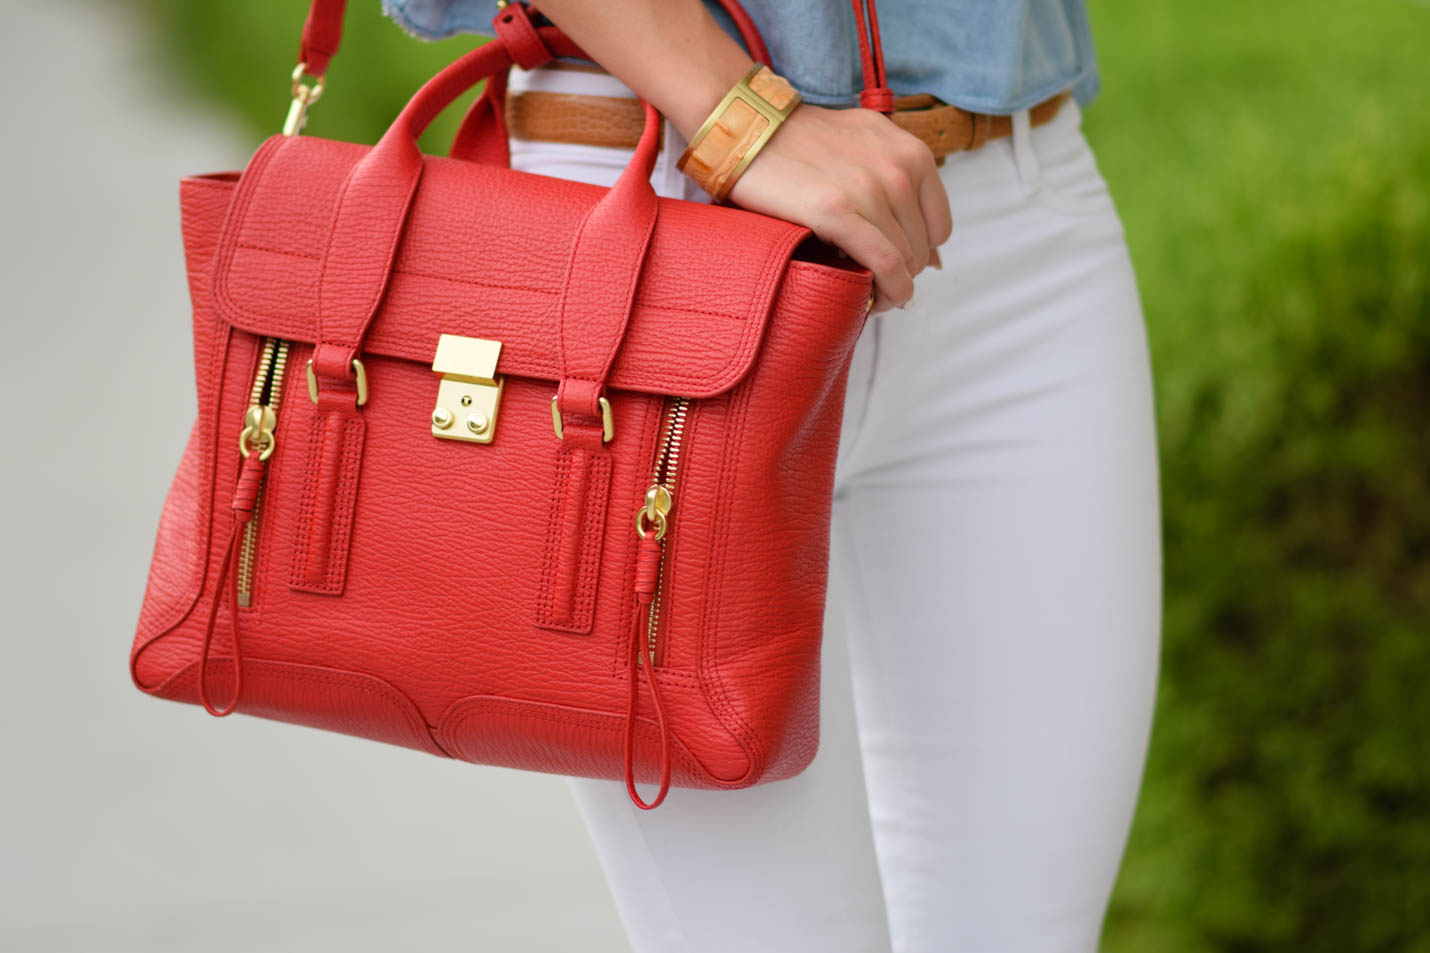 phillip lim medium satchel in red